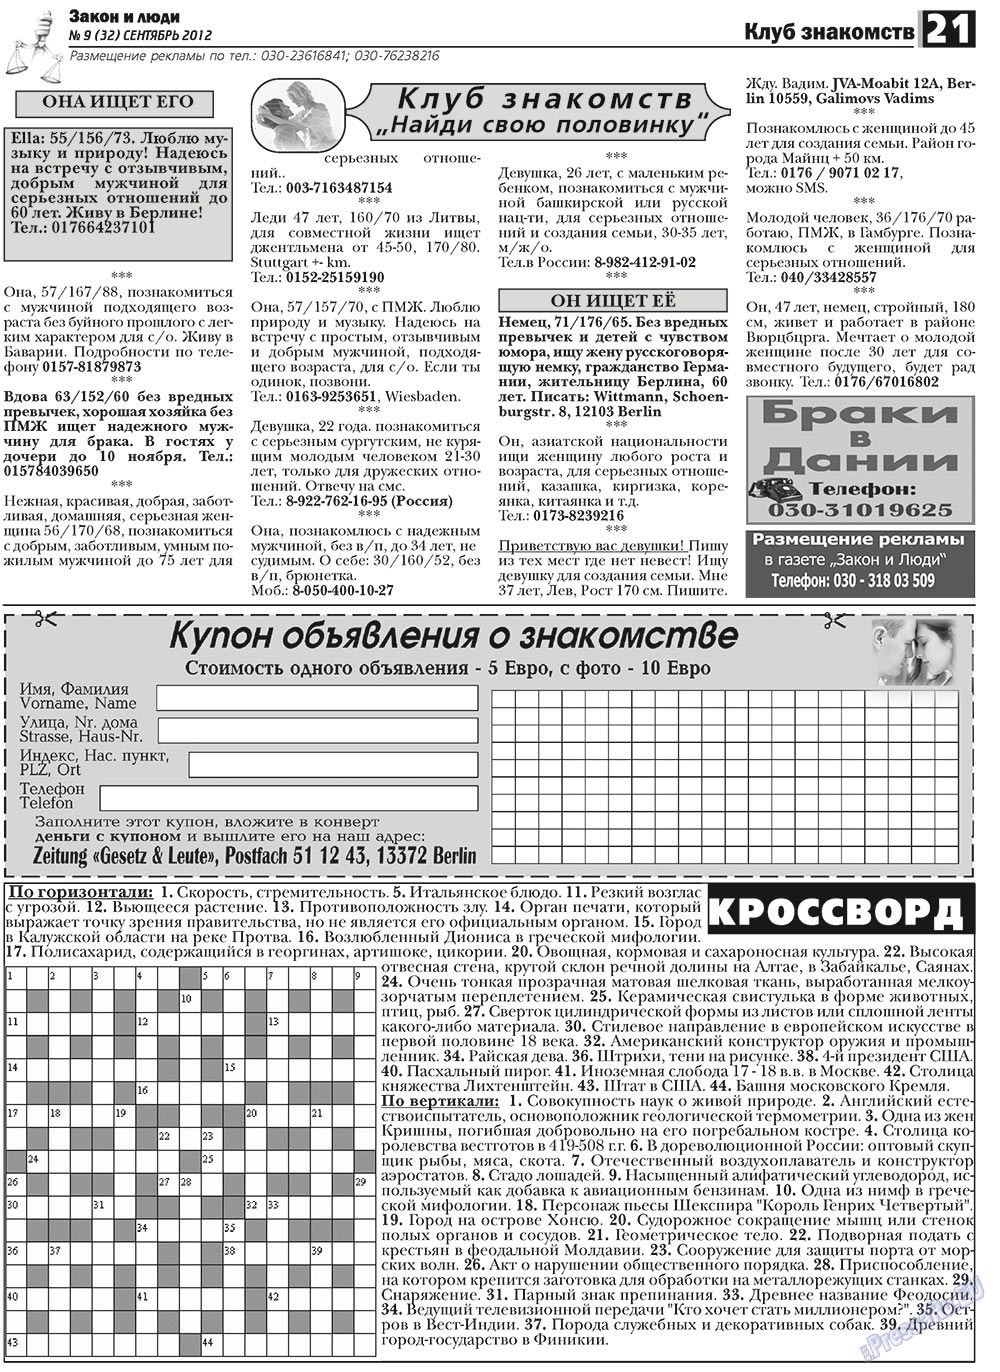 Закон и люди, газета. 2012 №9 стр.21